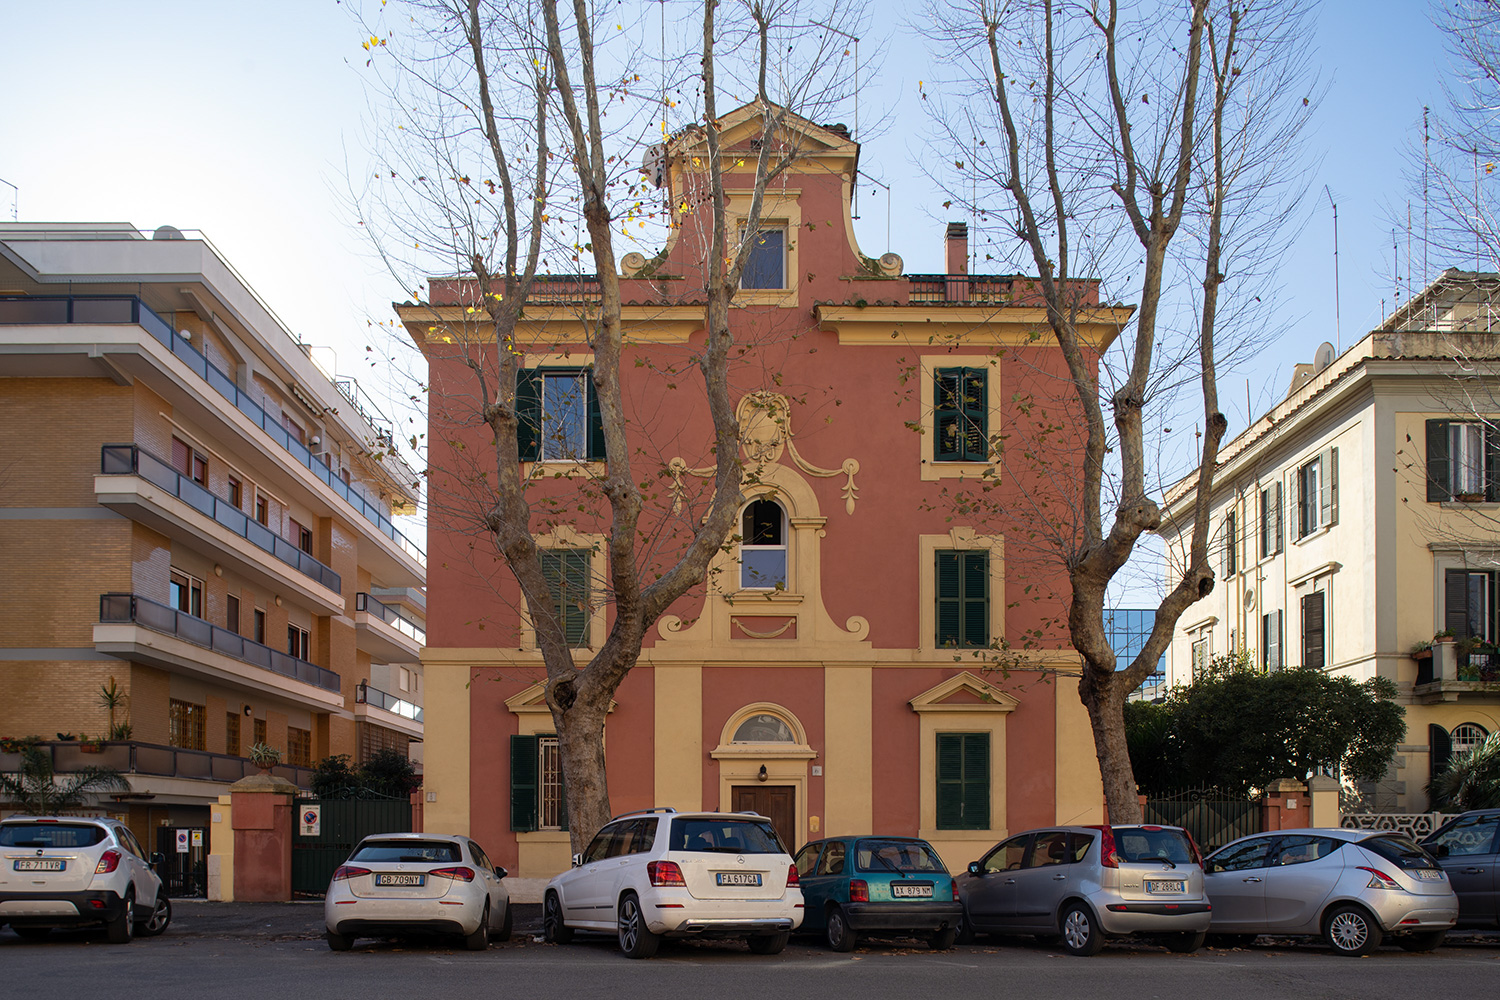 _nf - architecture - Quadrante Sud - Daniele Di Pietro